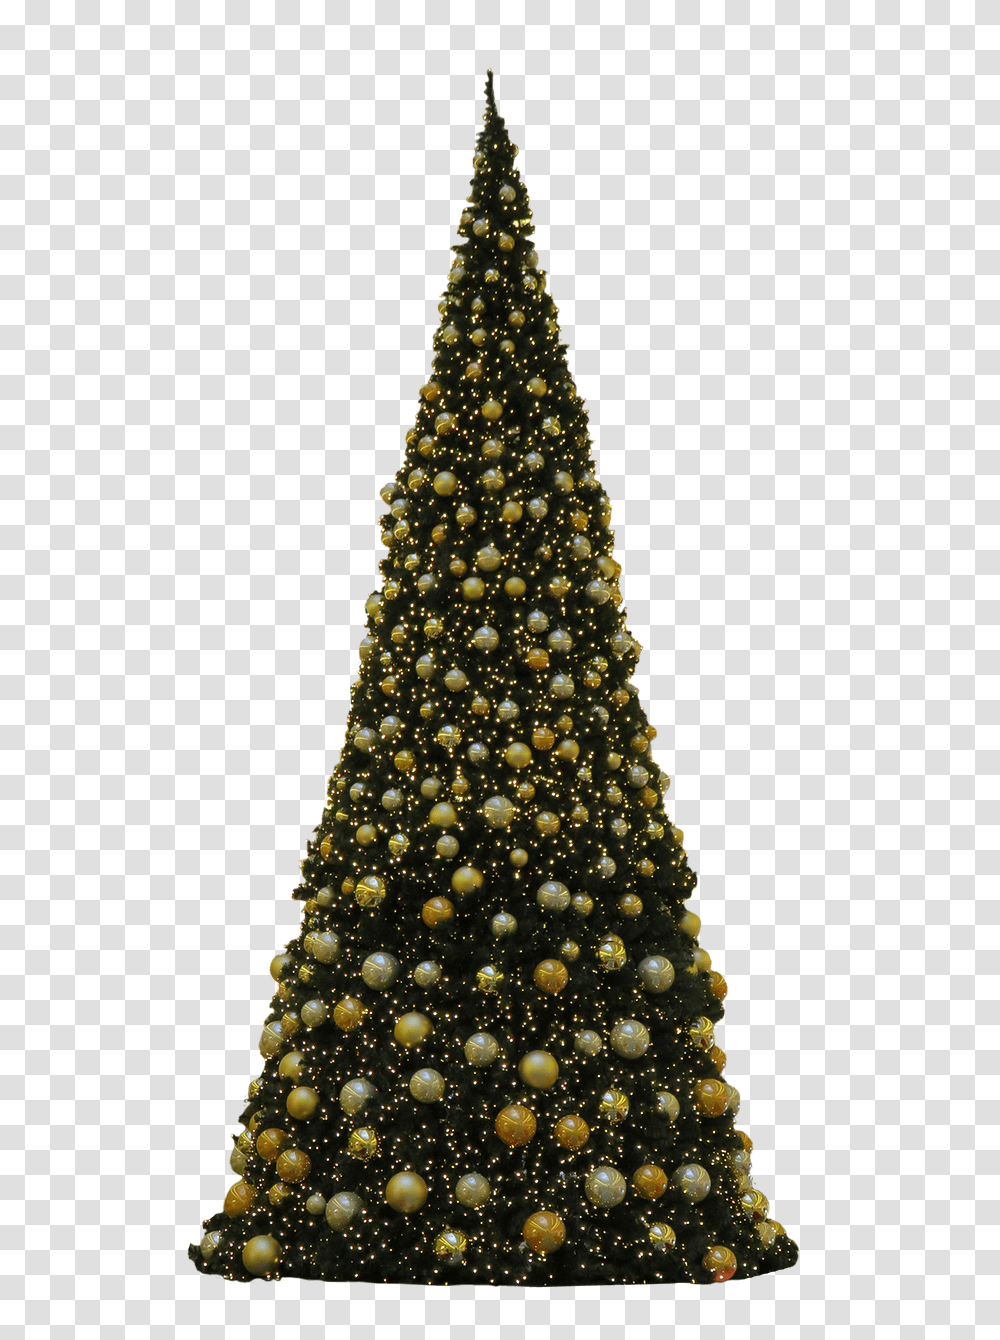 De Navidad Tres Bolas Doradas Transparente, Christmas Tree, Ornament, Plant, Pine Transparent Png